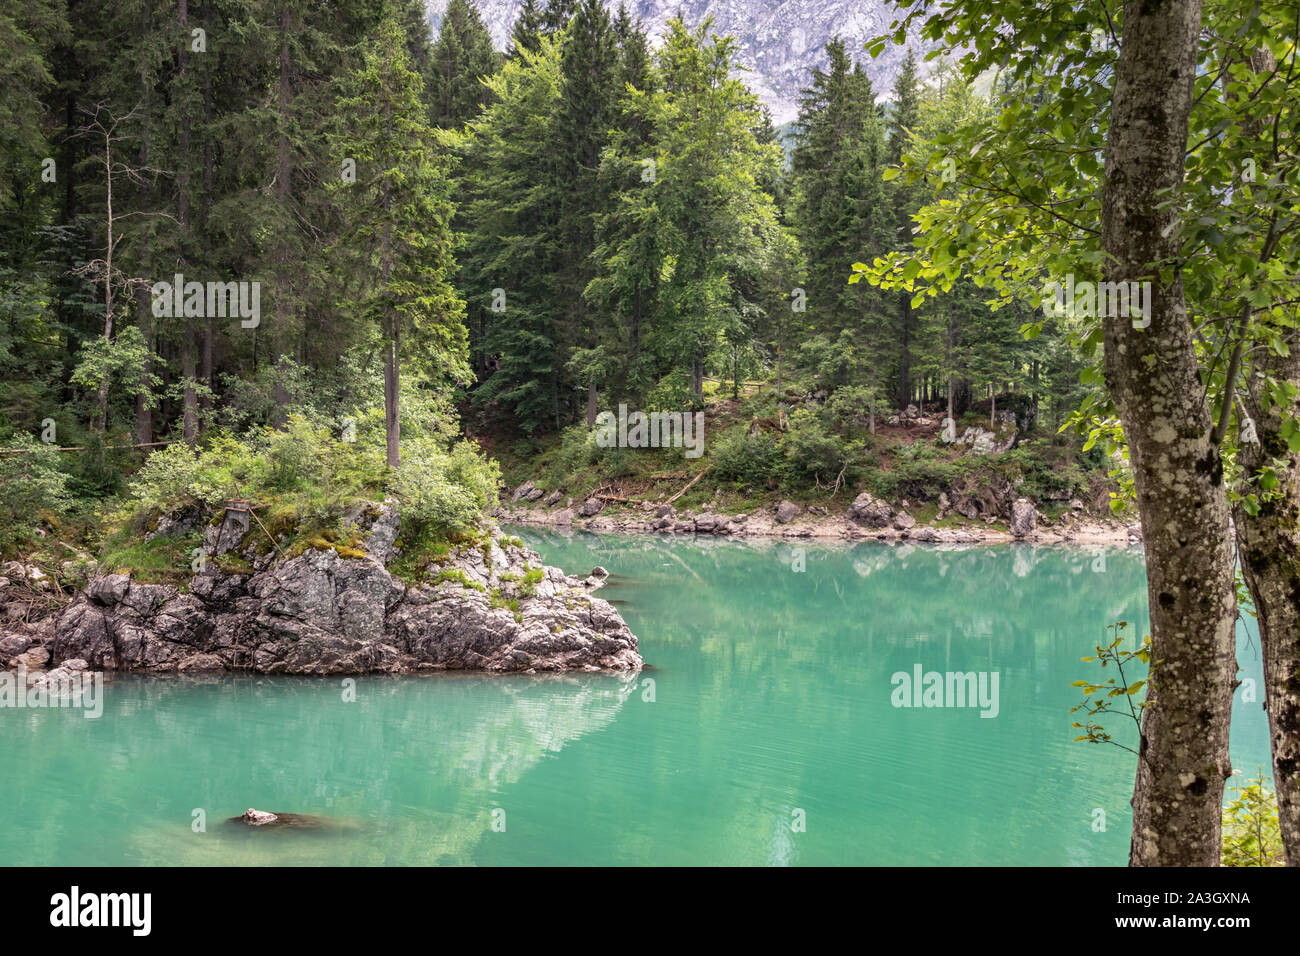 Klares türkisfarbenes Wasser von Fusine See in den italienischen Alpen. Die Seen befinden sich in einem Bereich, ist ein Teil der Julischen Alpen, nahe der Grenze zu Slowenien. Stockfoto